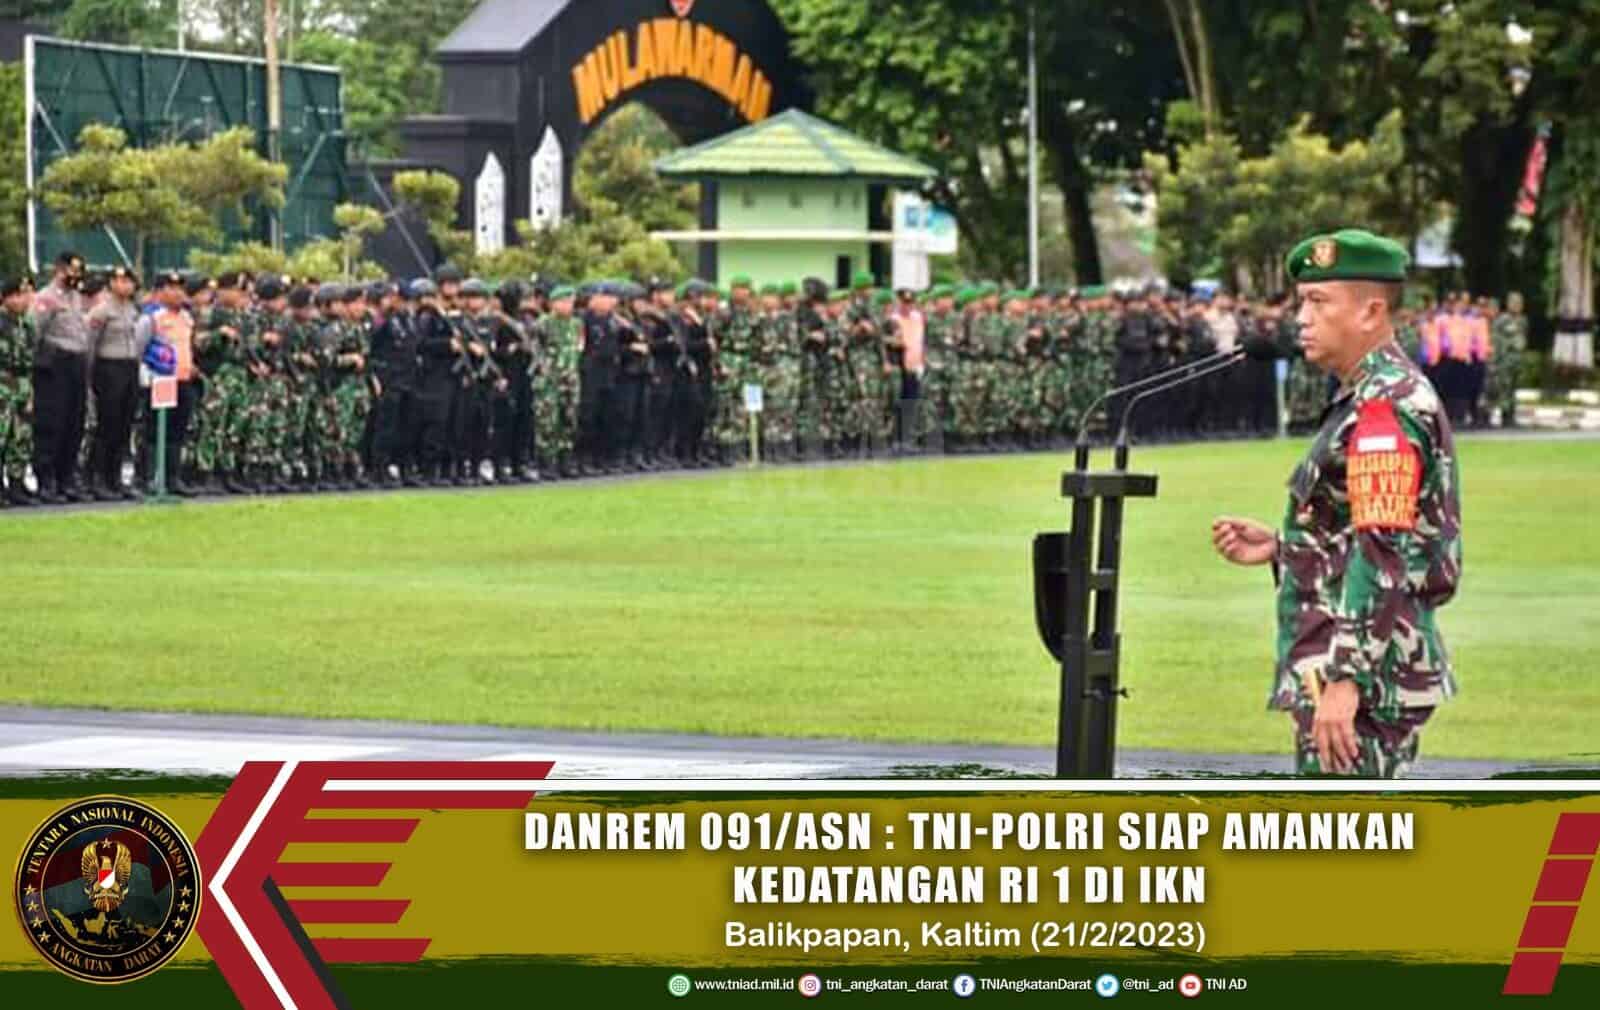 Danrem 091/ASN : TNI-Polri Siap Amankan Kedatangan RI 1 di IKN